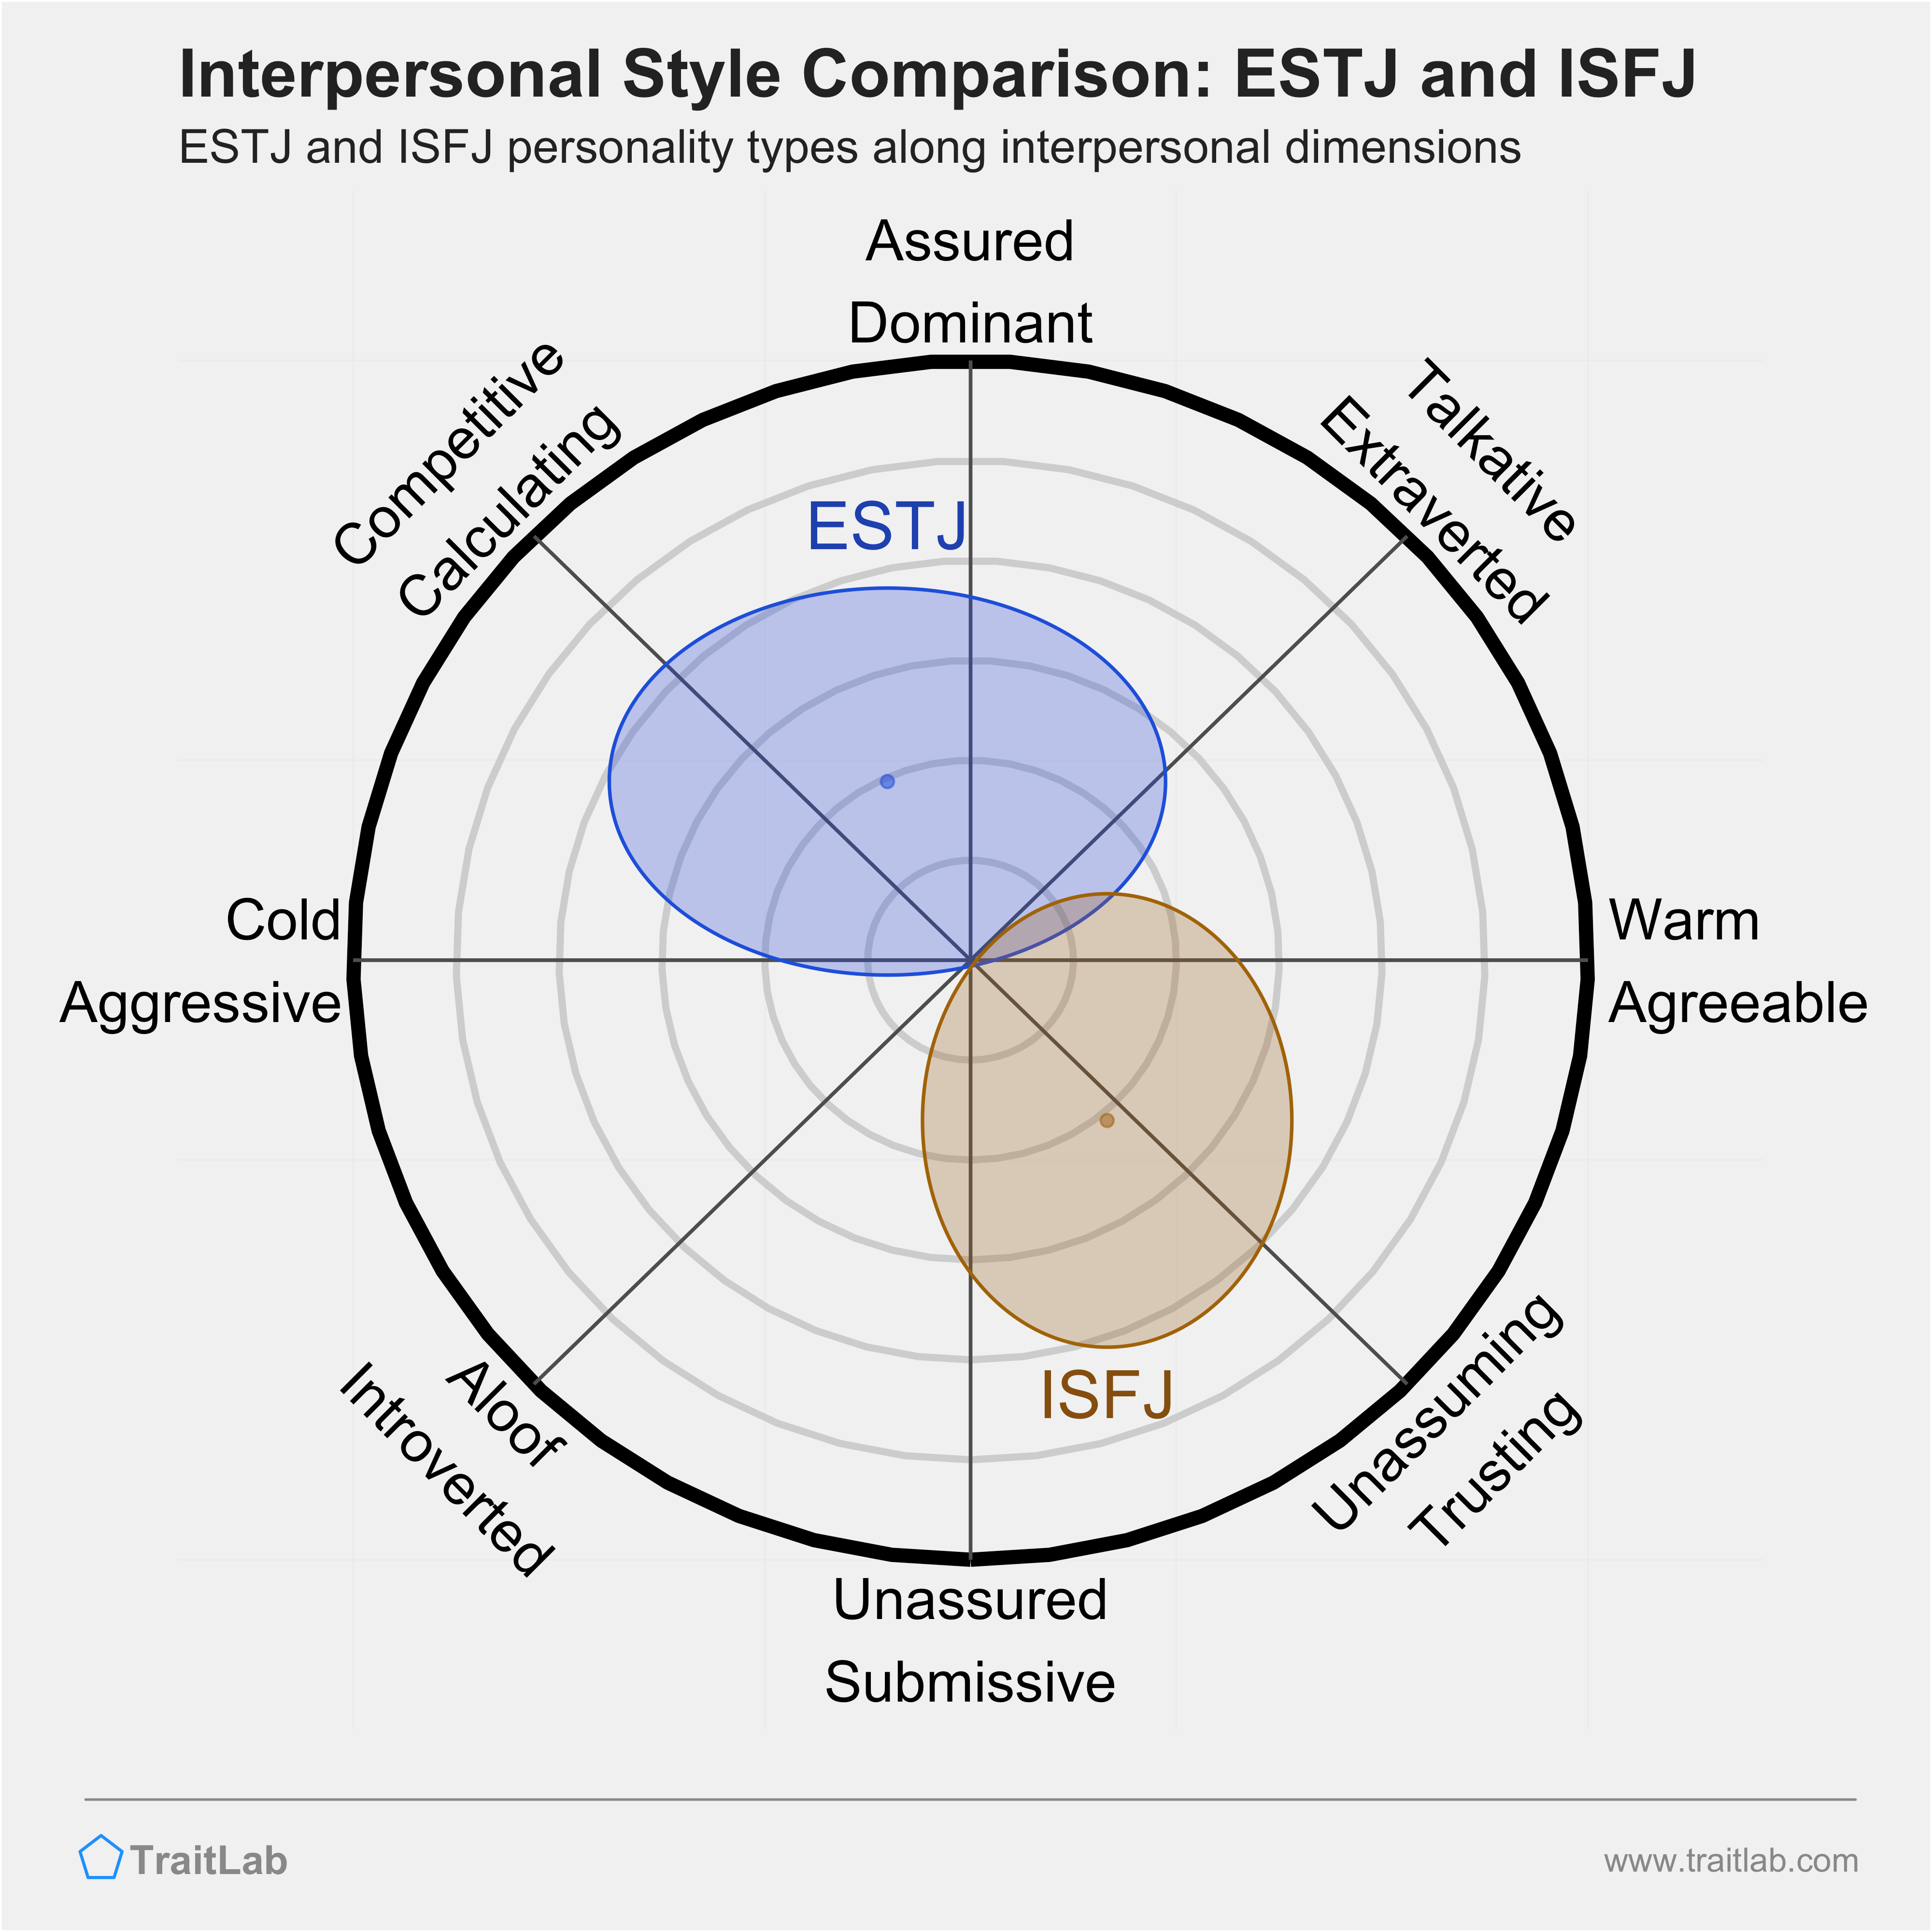 ESTJ and ISFJ comparison across interpersonal dimensions